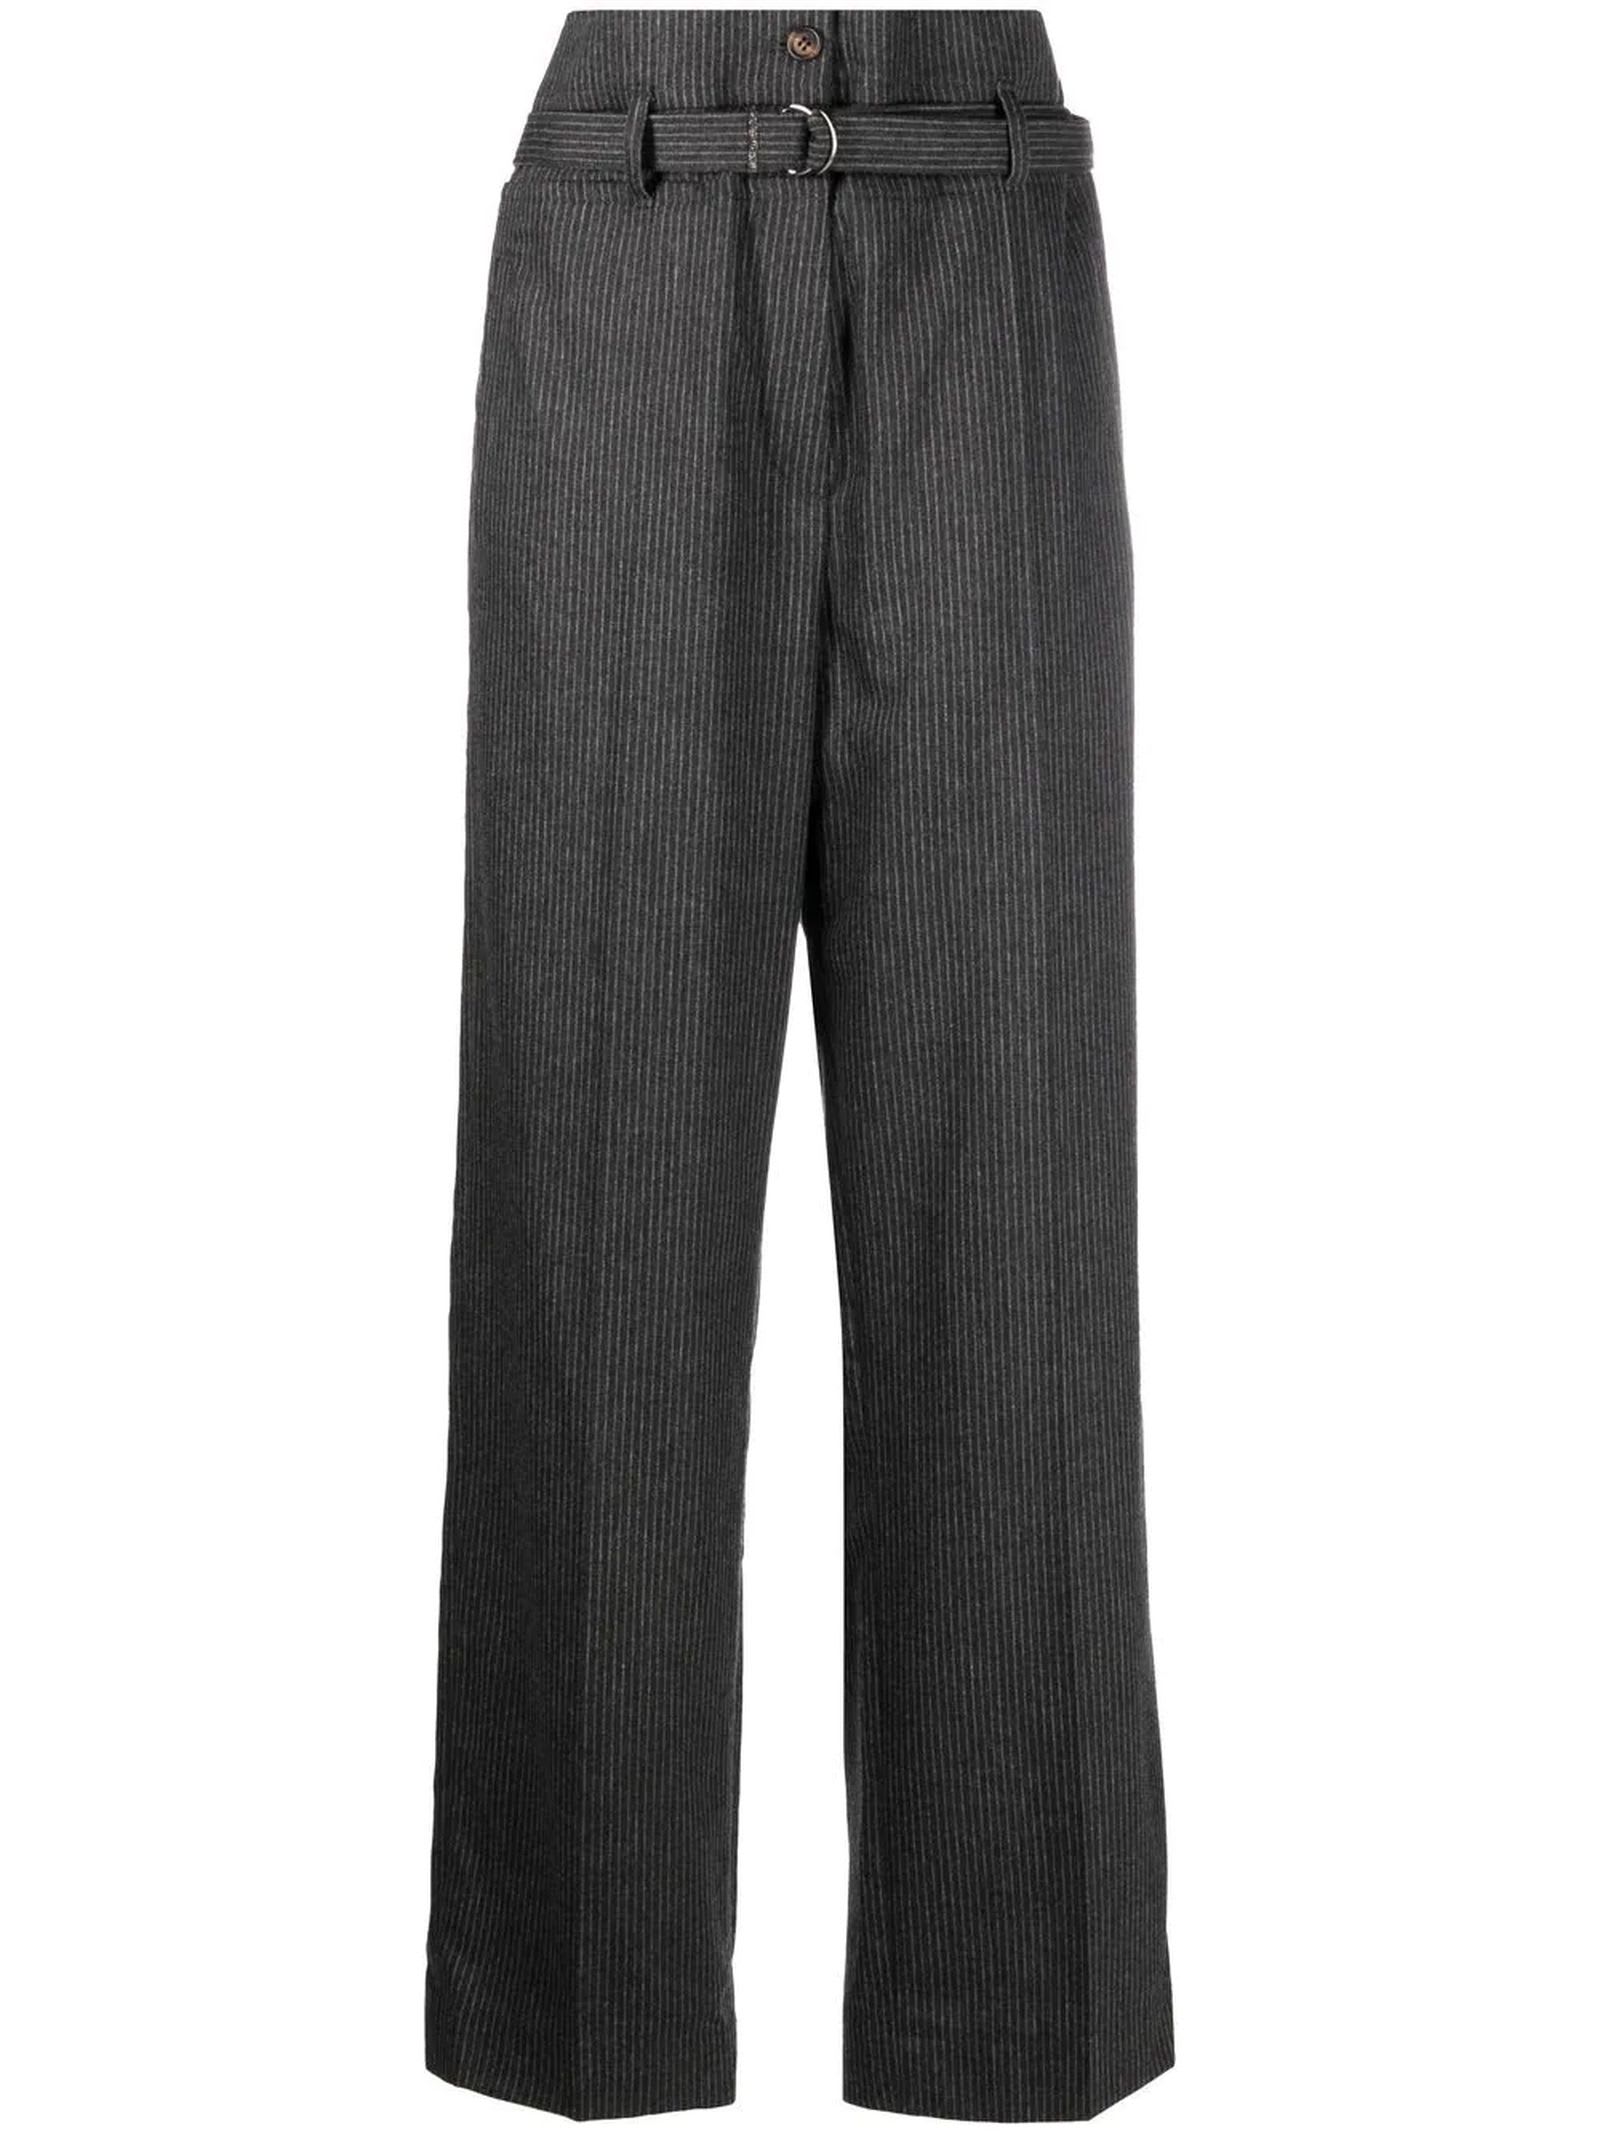 Brunello Cucinelli Slate Grey Virgin Wool Blend Trousers